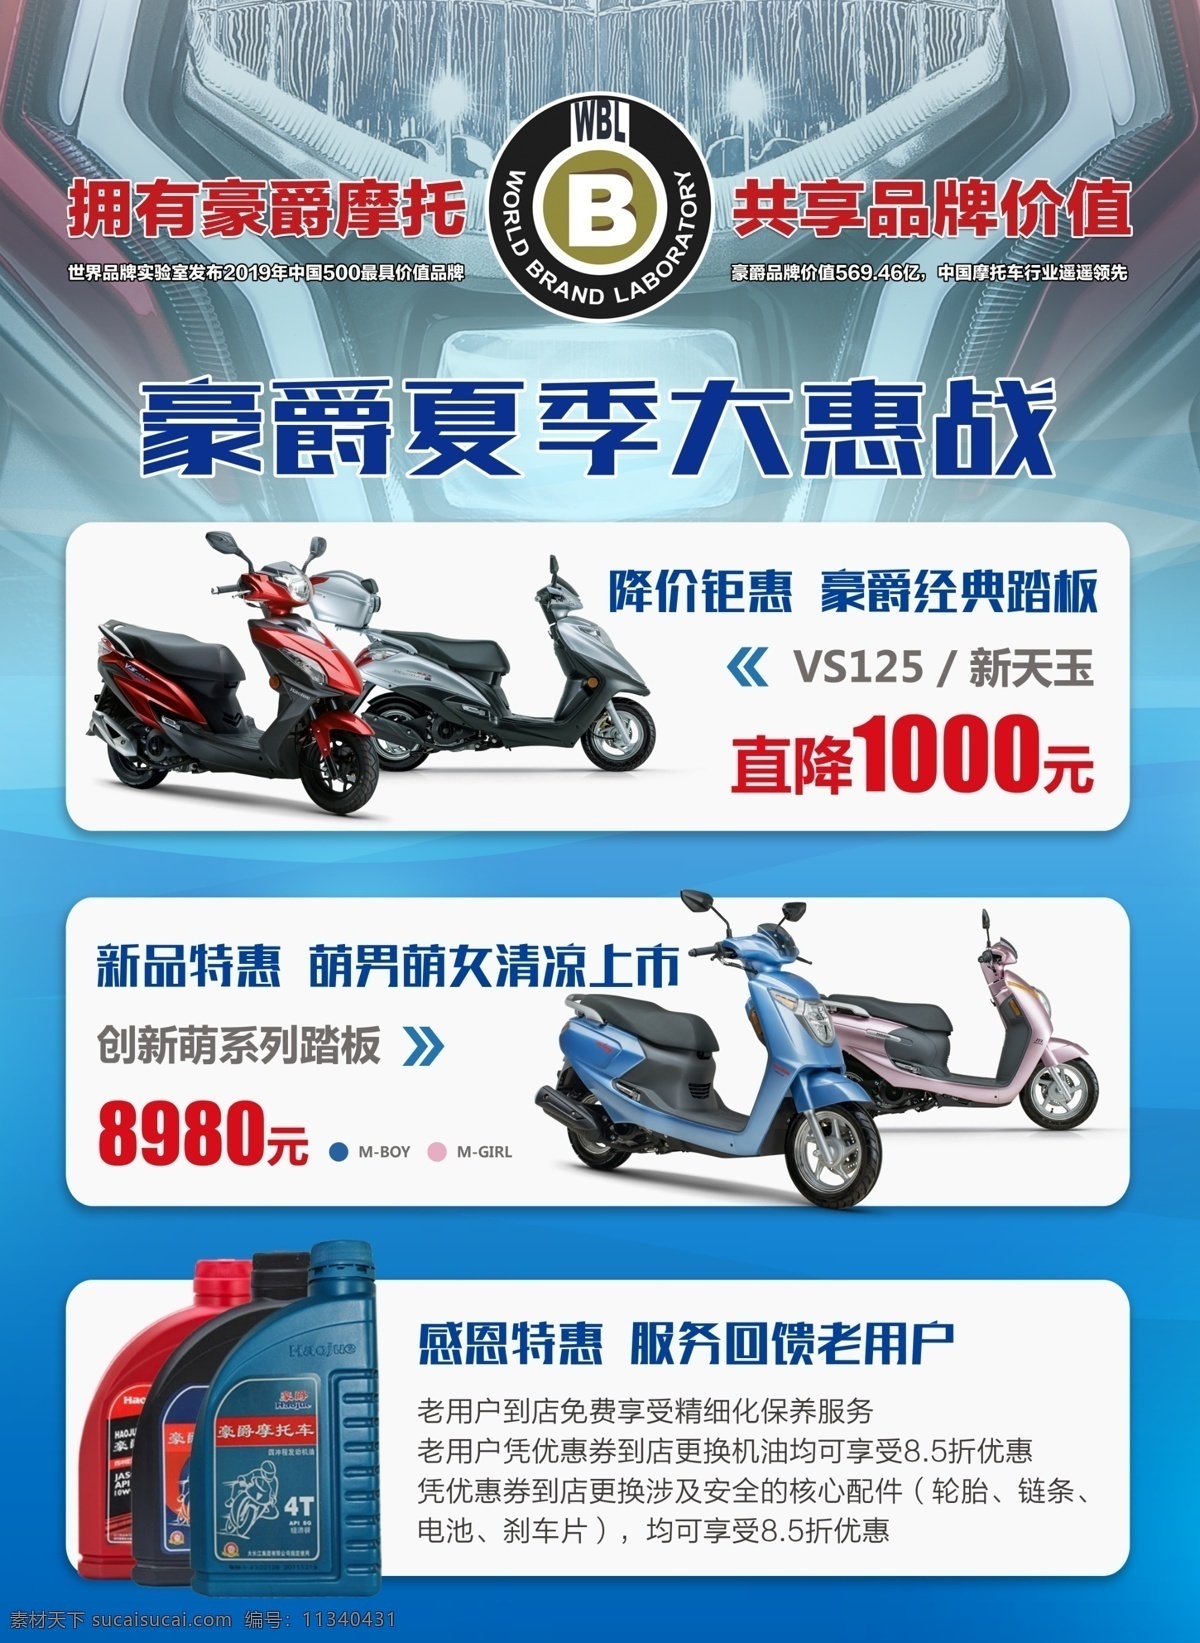 豪爵宣传单 豪爵 宣传单 彩页 摩托车宣传单 摩托宣传单 摩托车促销